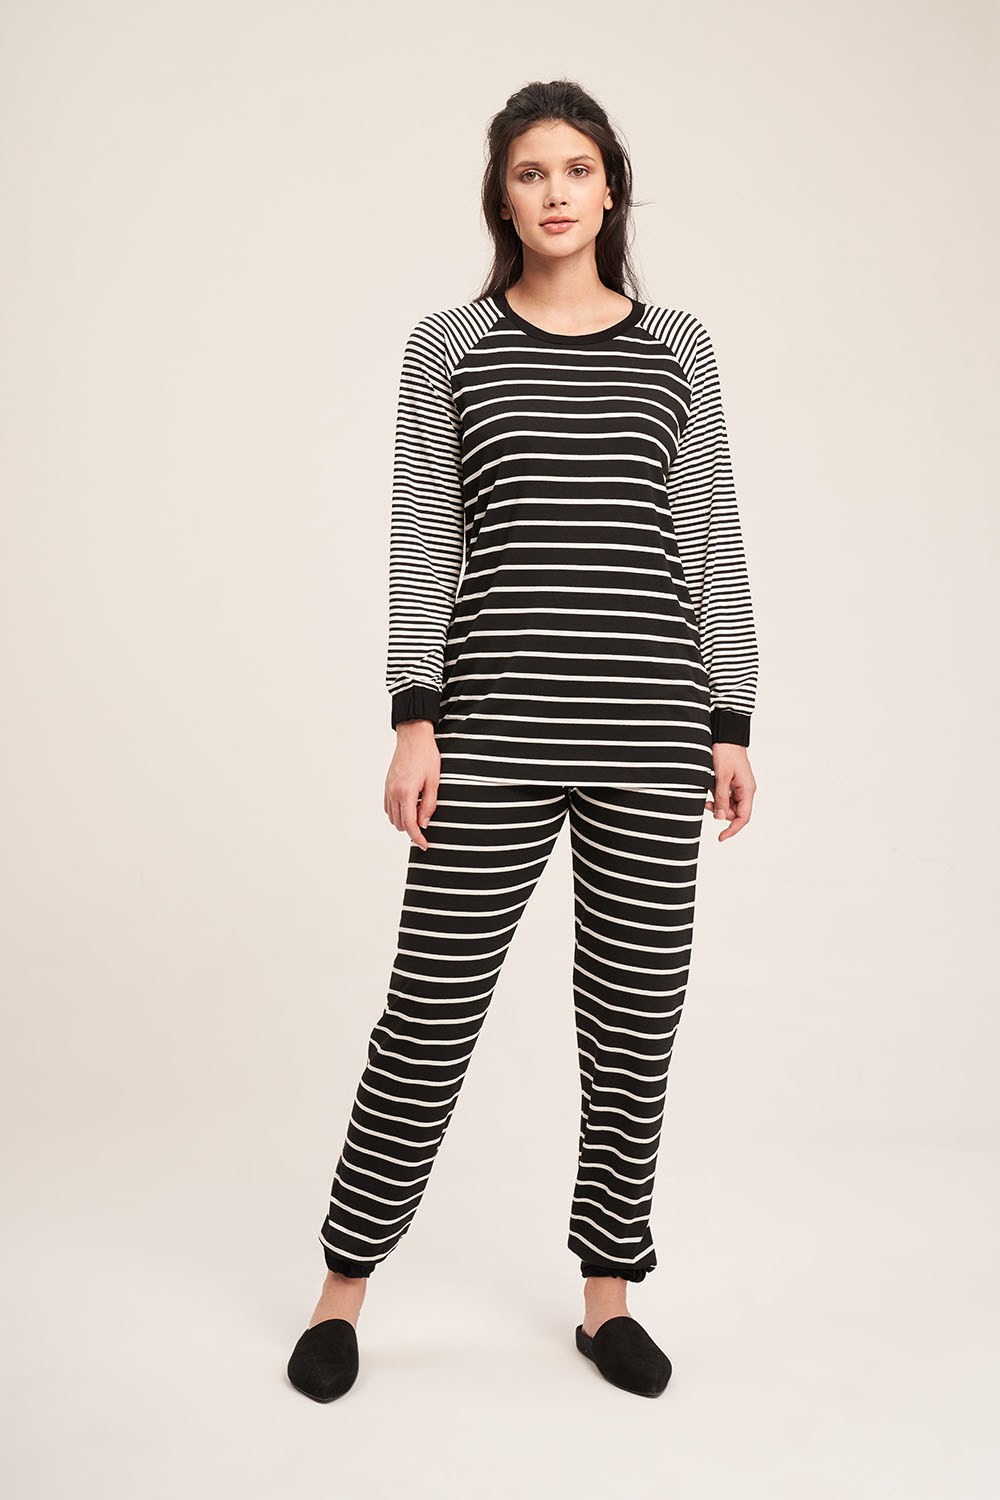 Striped Camisole Pajamas Set (Black)